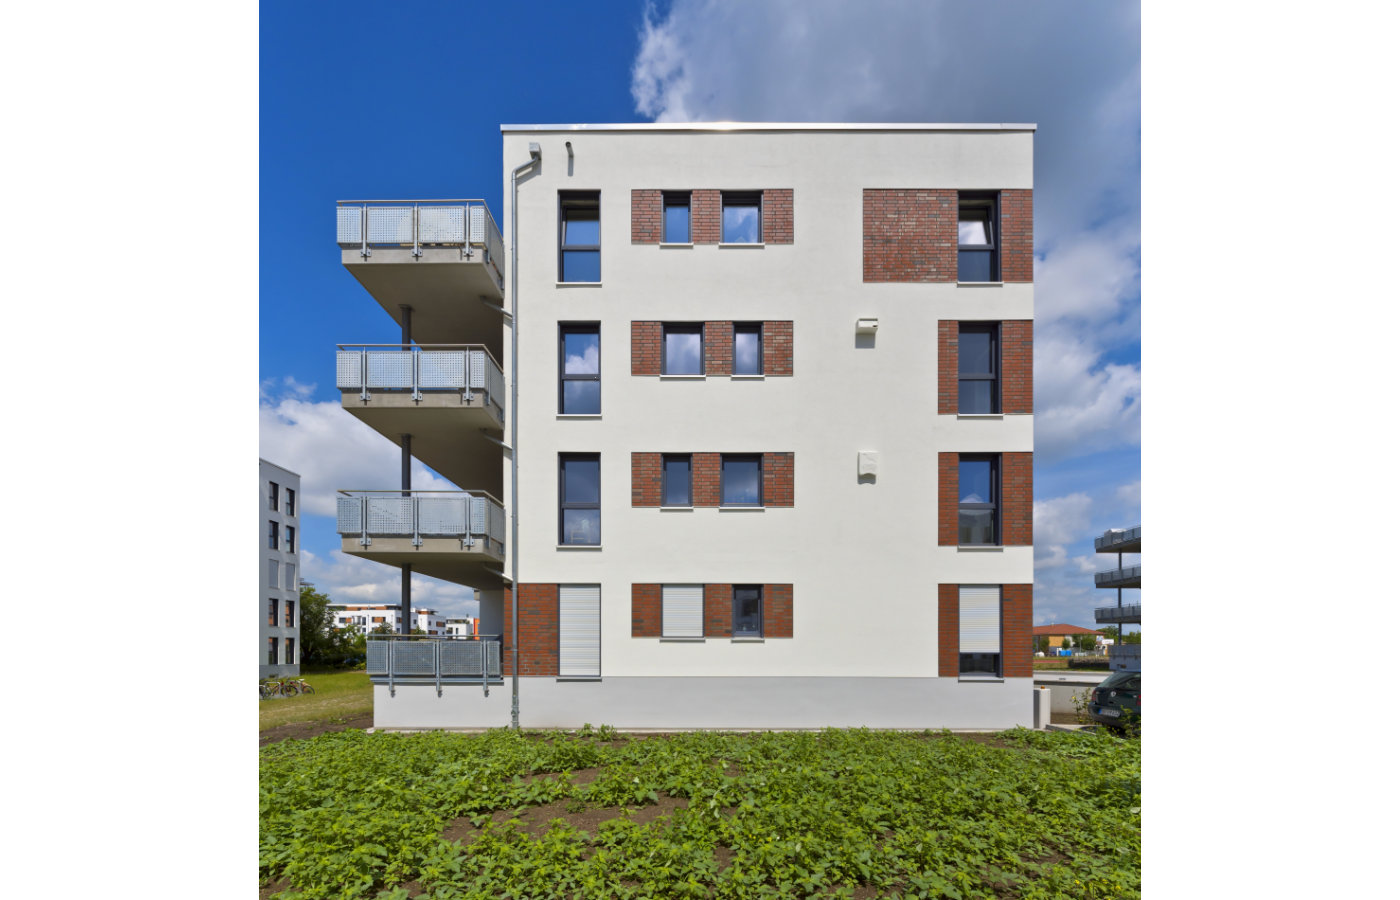 Projektentwicklung für den Neubau von Wohnungen in Schwerin 6